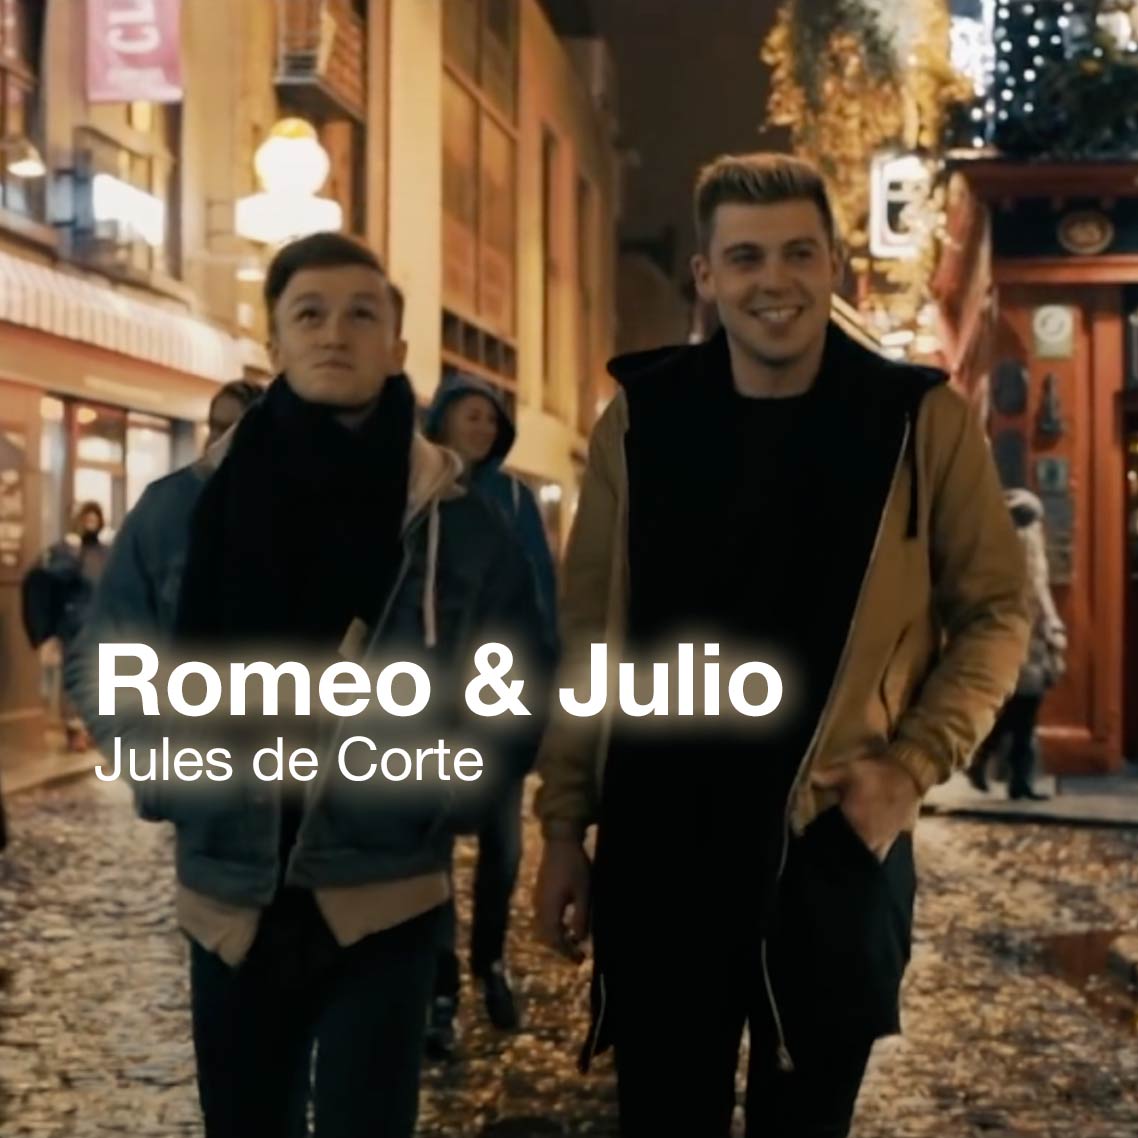 Romeo & Julio | music video 